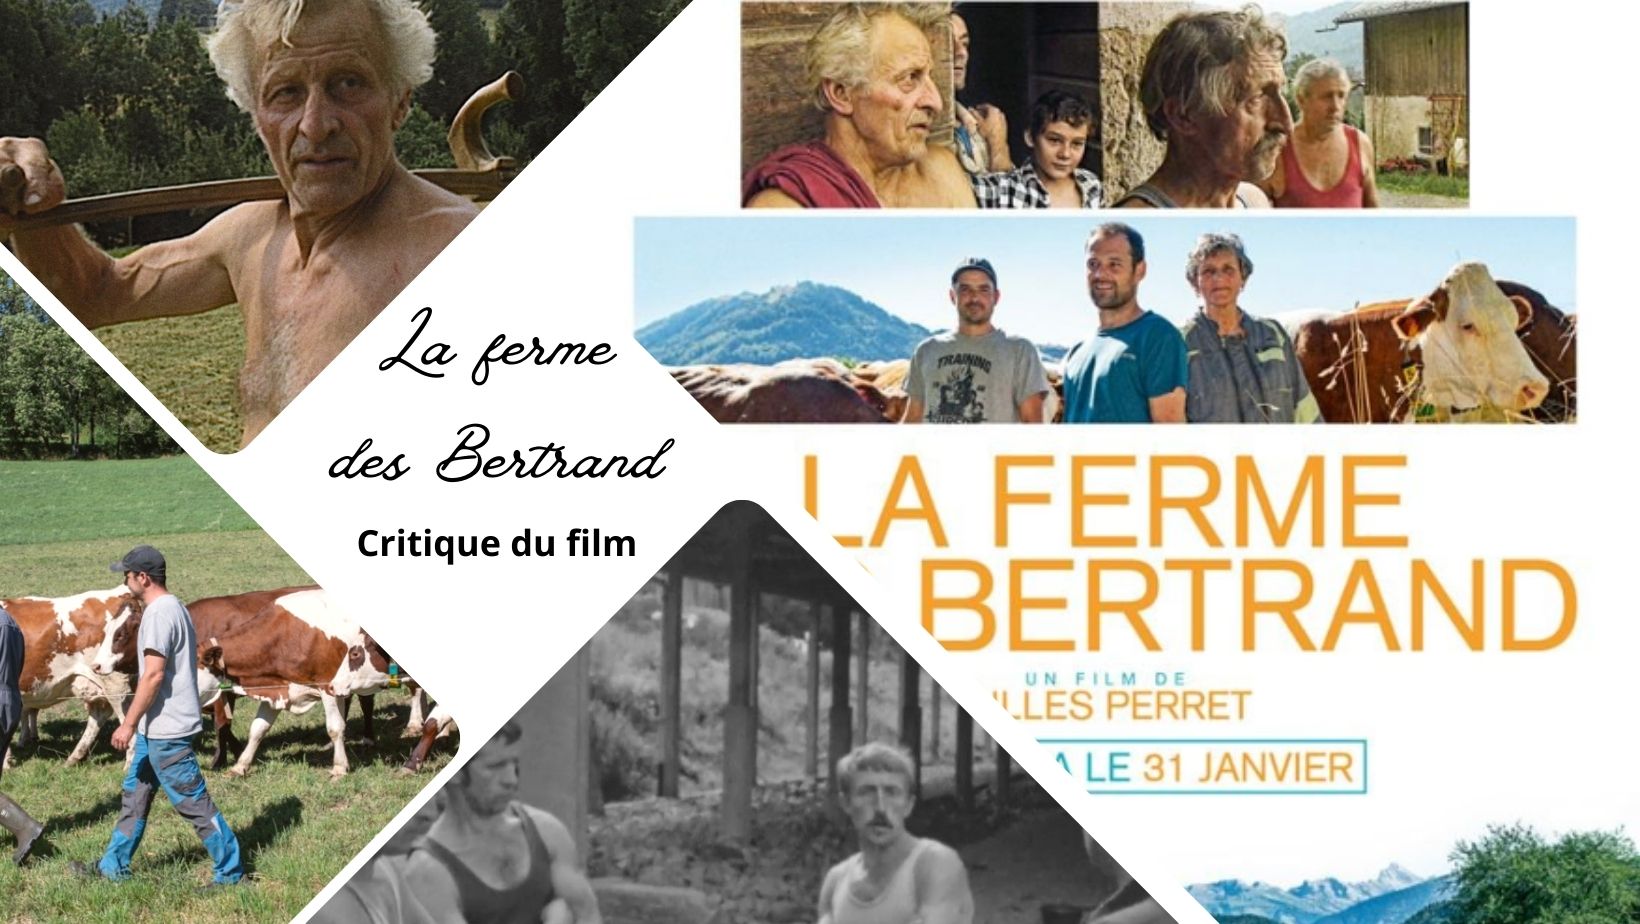 La Ferme des Bertrand - Critique du film